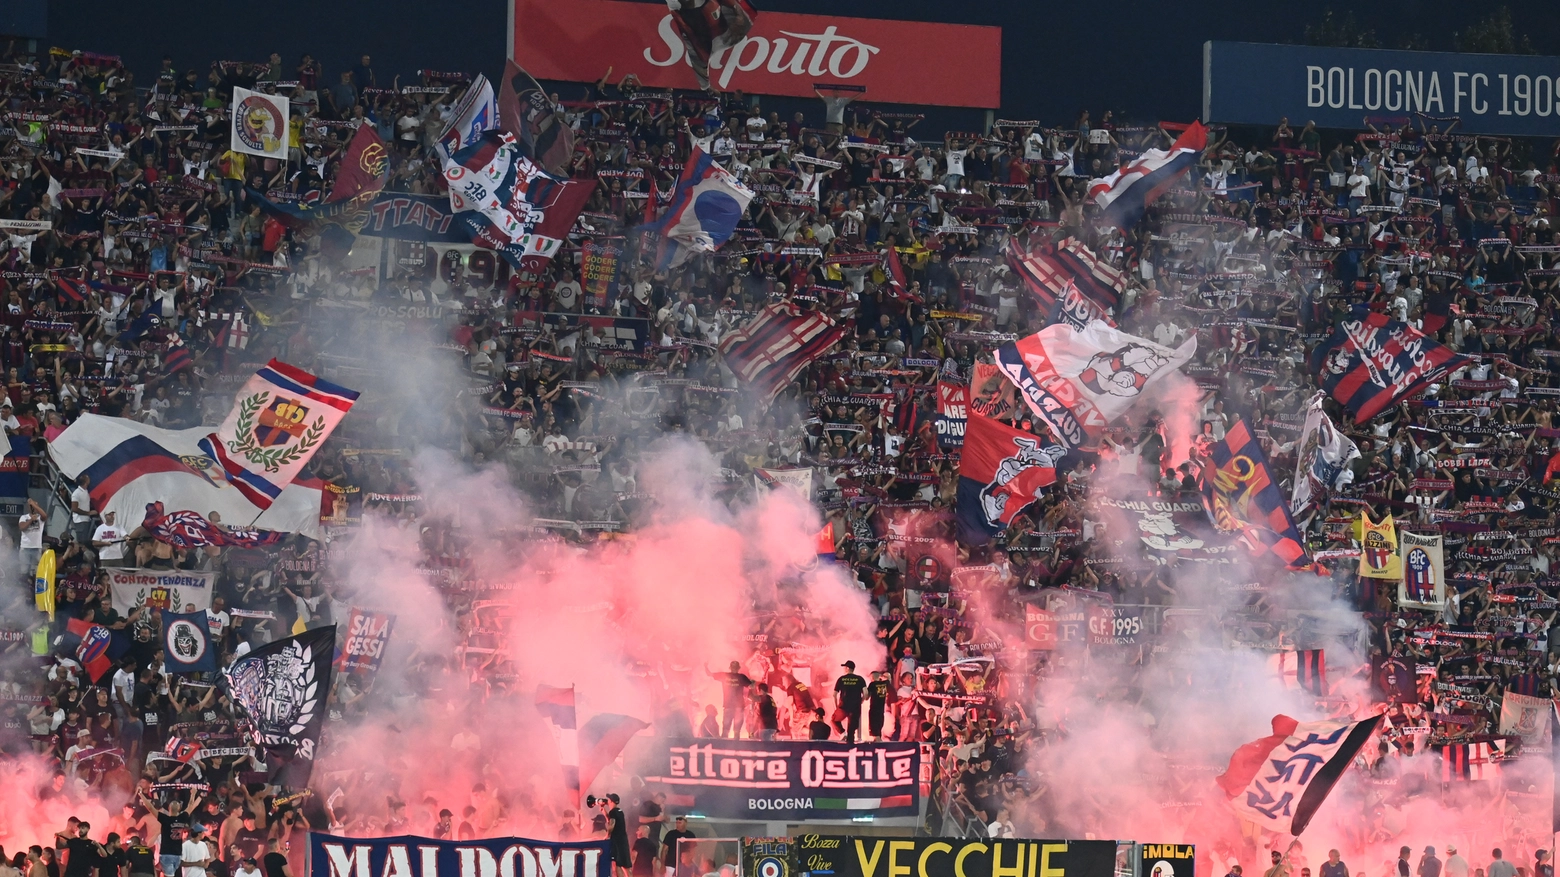 La curva del Bologna in una delle partite casalinghe della scorsa stagione: il weekend del 18 agosto i rossoblù ripartiranno dal Dall'Ara contro l'Udinese (FotoSchicchi)